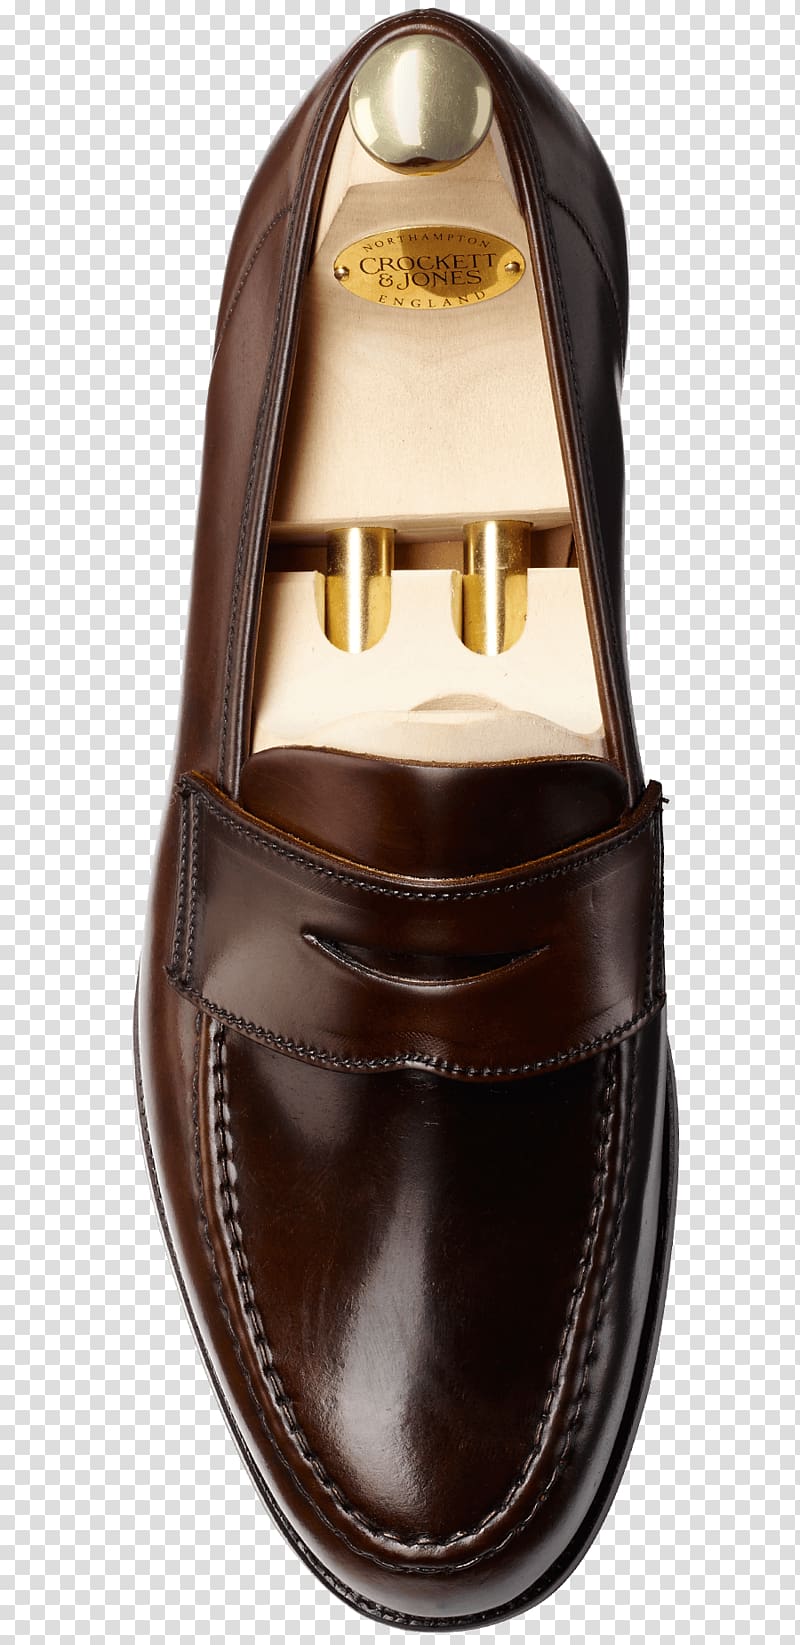 Slip-on shoe Le Marais Crockett & Jones Leather, CROWED transparent background PNG clipart